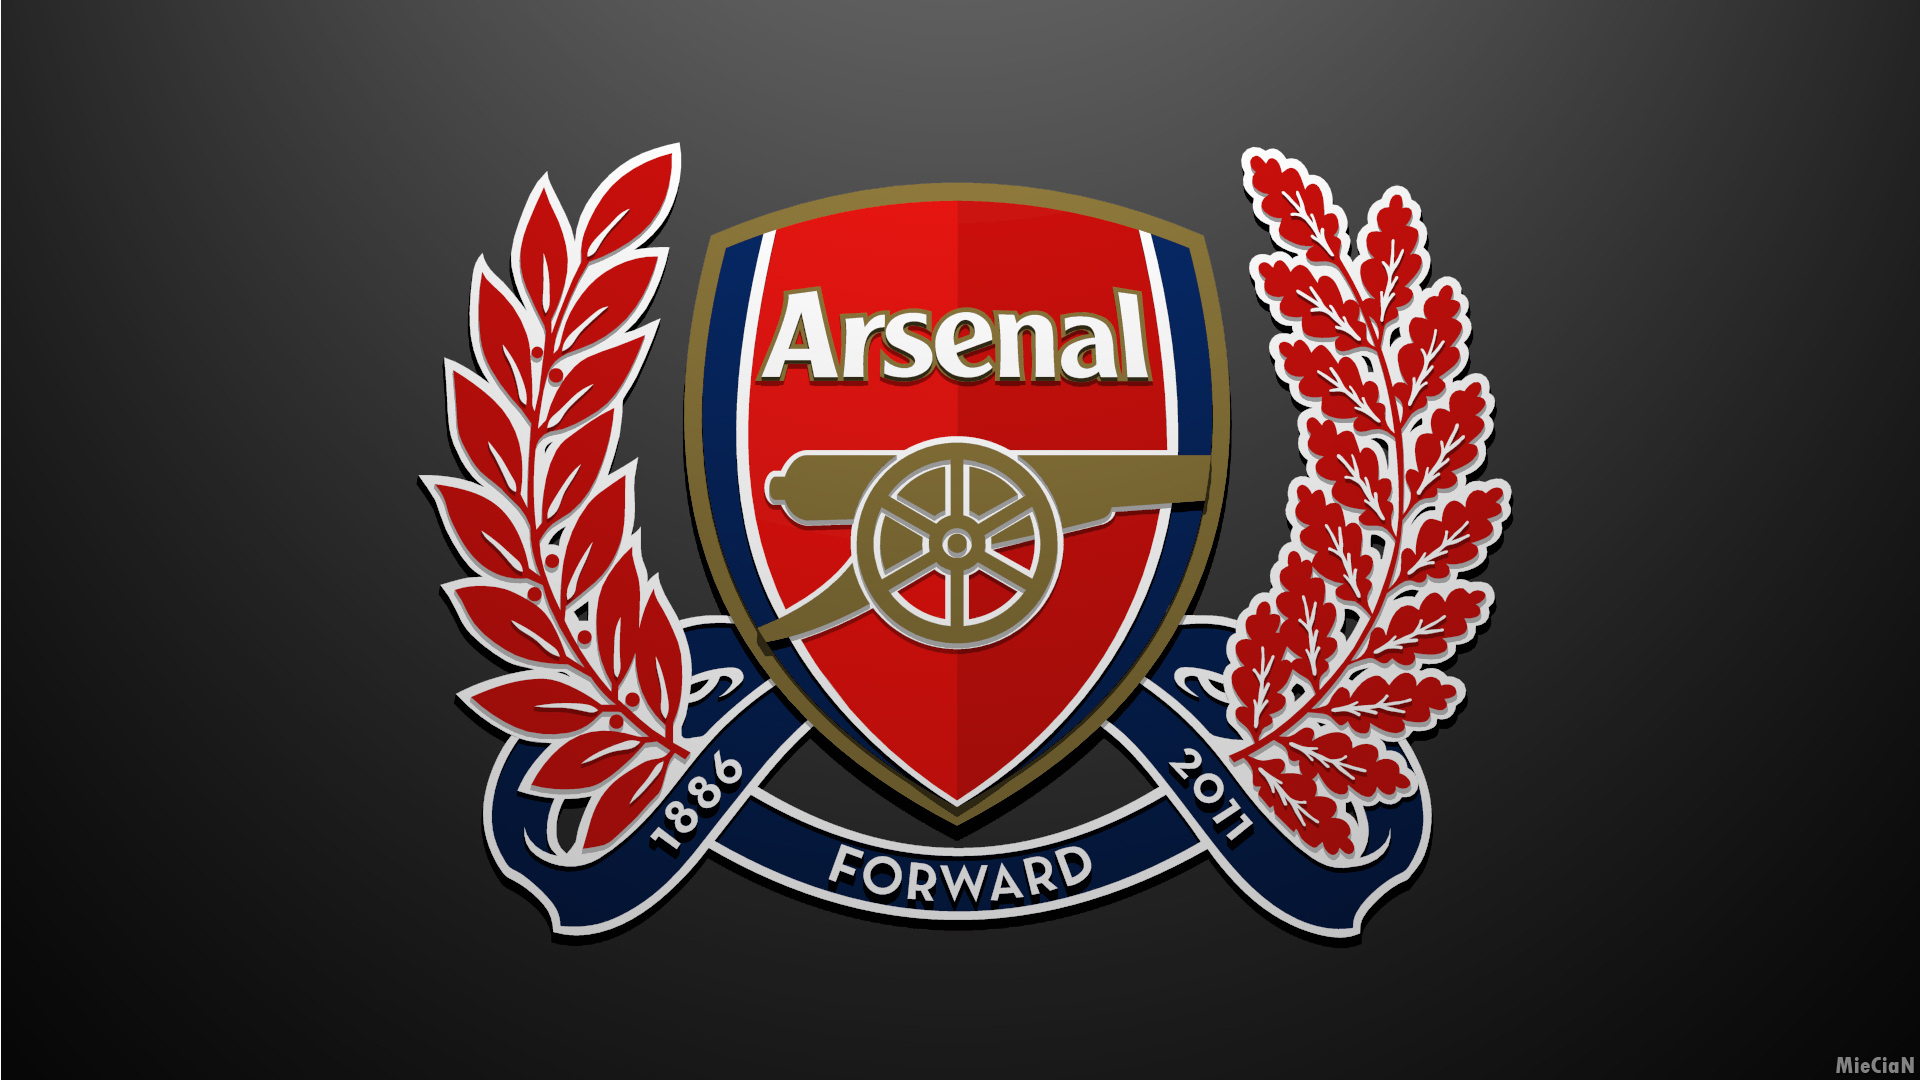 [49+] Arsenal Logo Wallpaper 2015 on WallpaperSafari